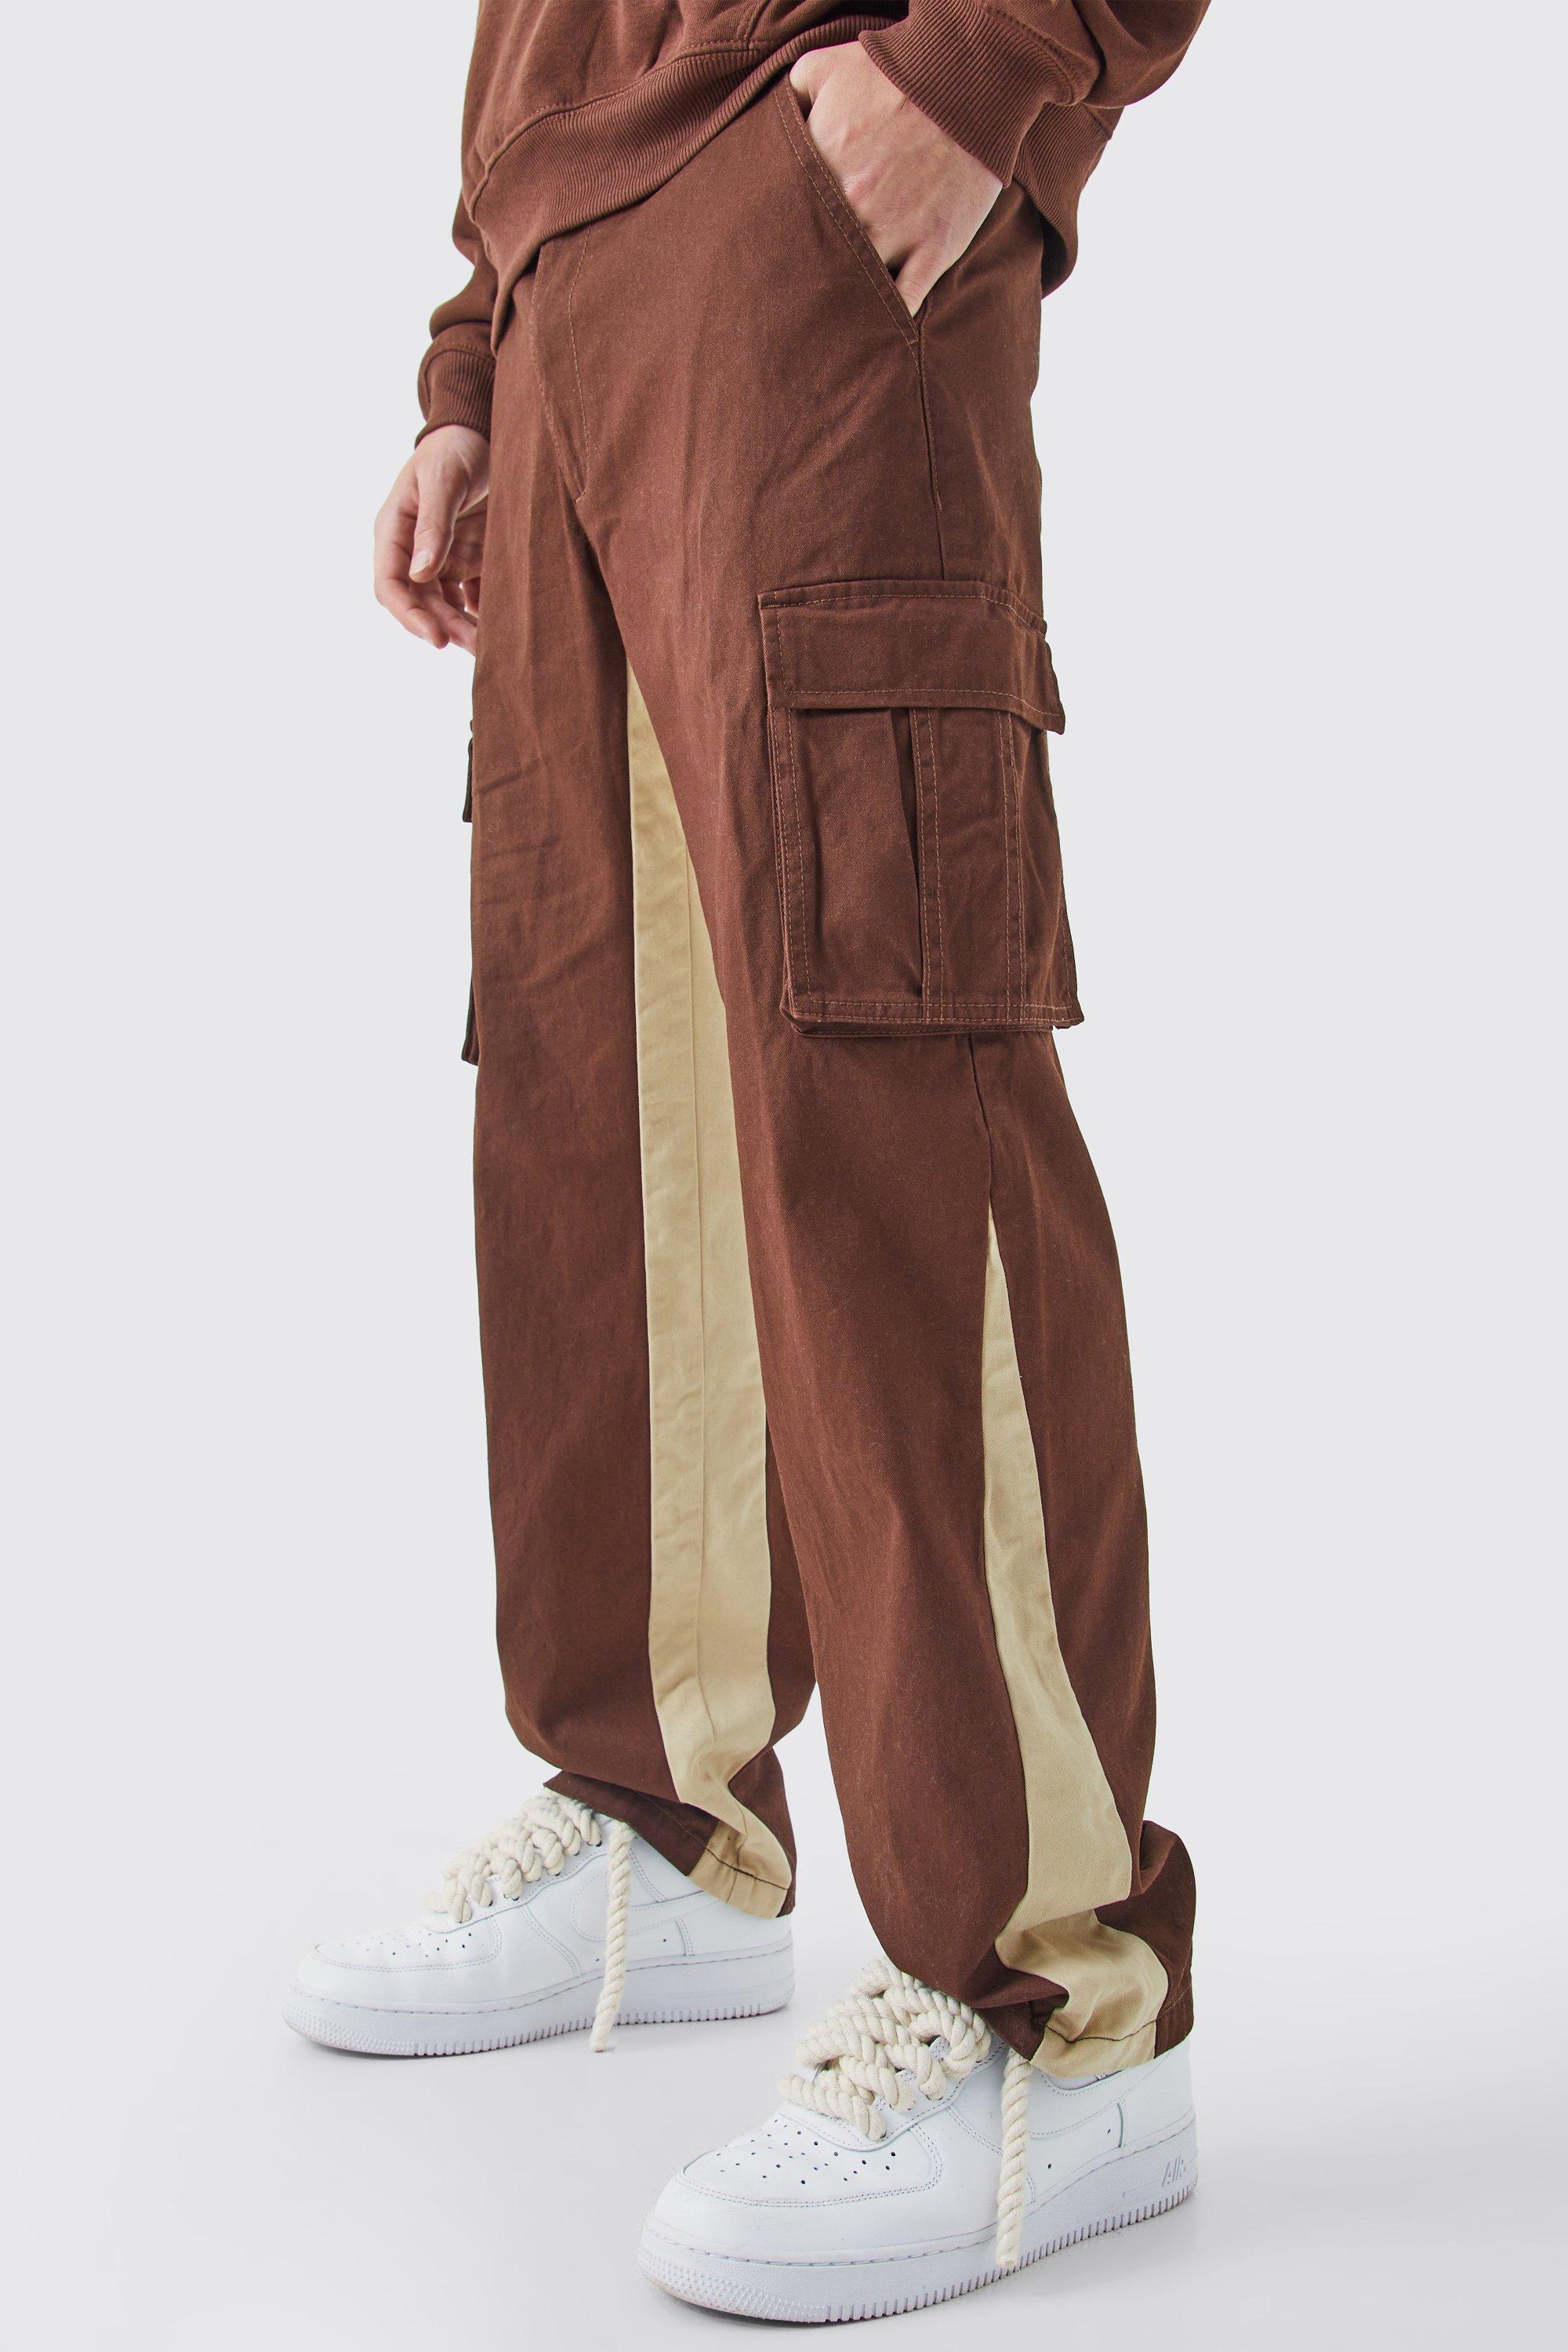 Image of Pantaloni Cargo con inserti in vita fissa, Brown